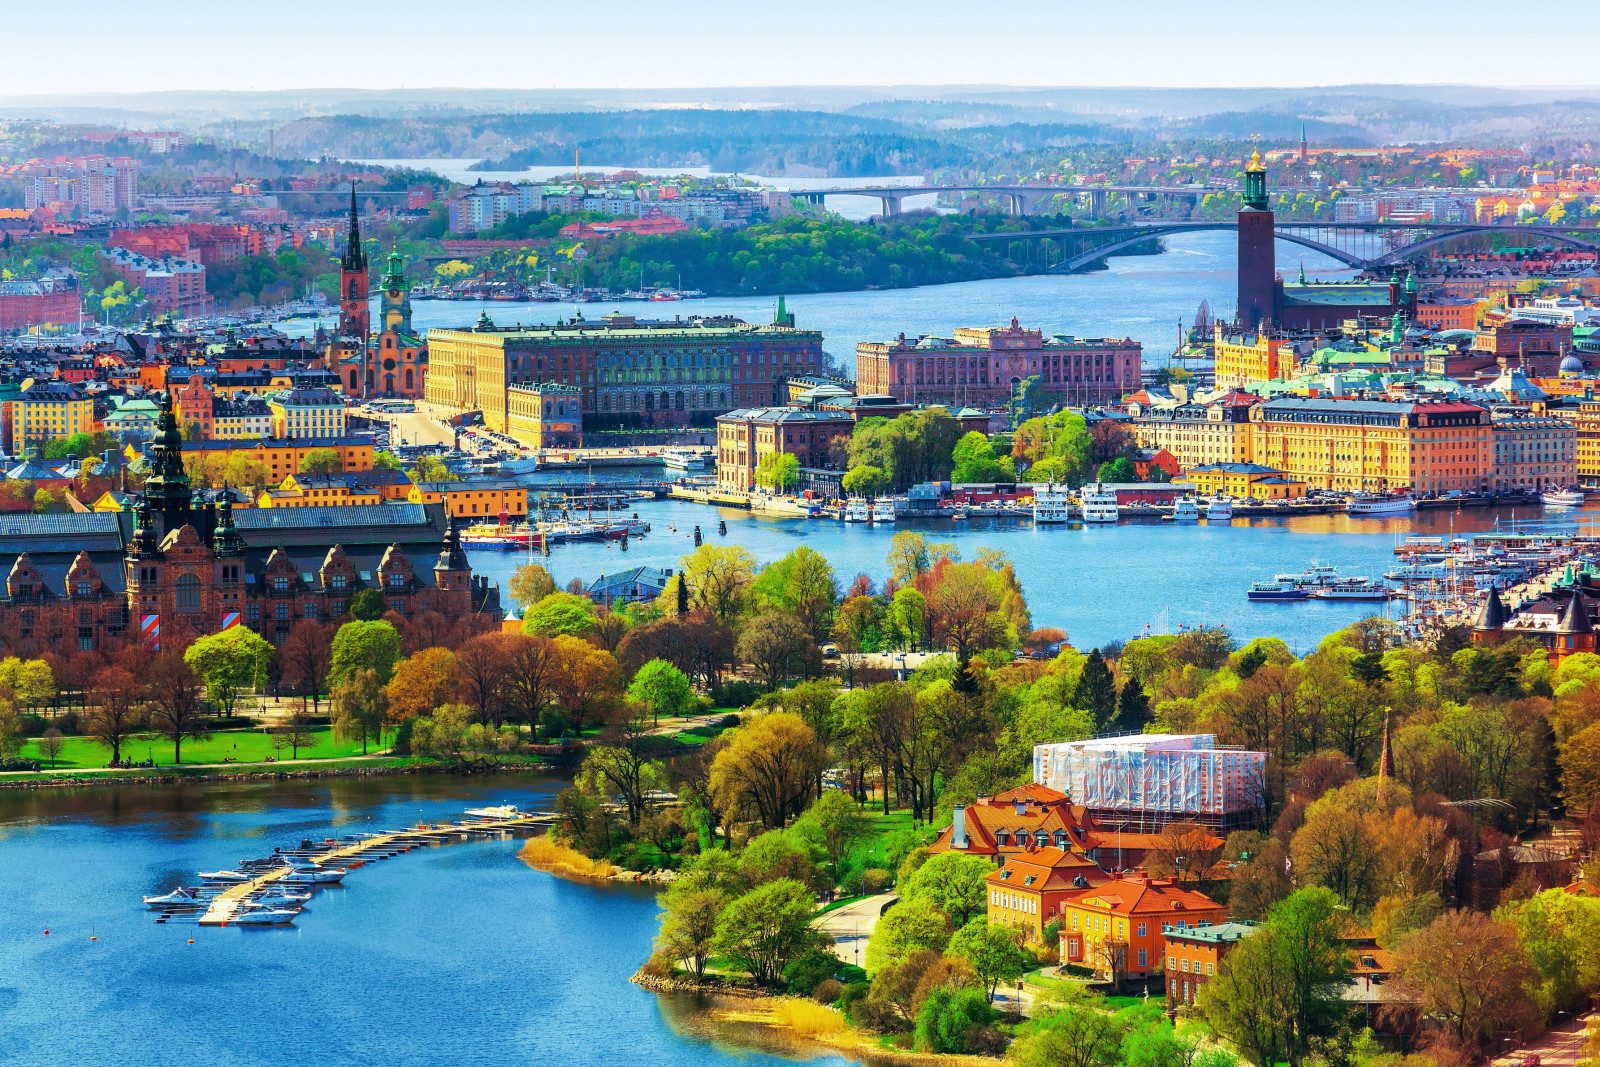 城市, 河, 景观, 树木, 家, 瑞典, 全景图, 船